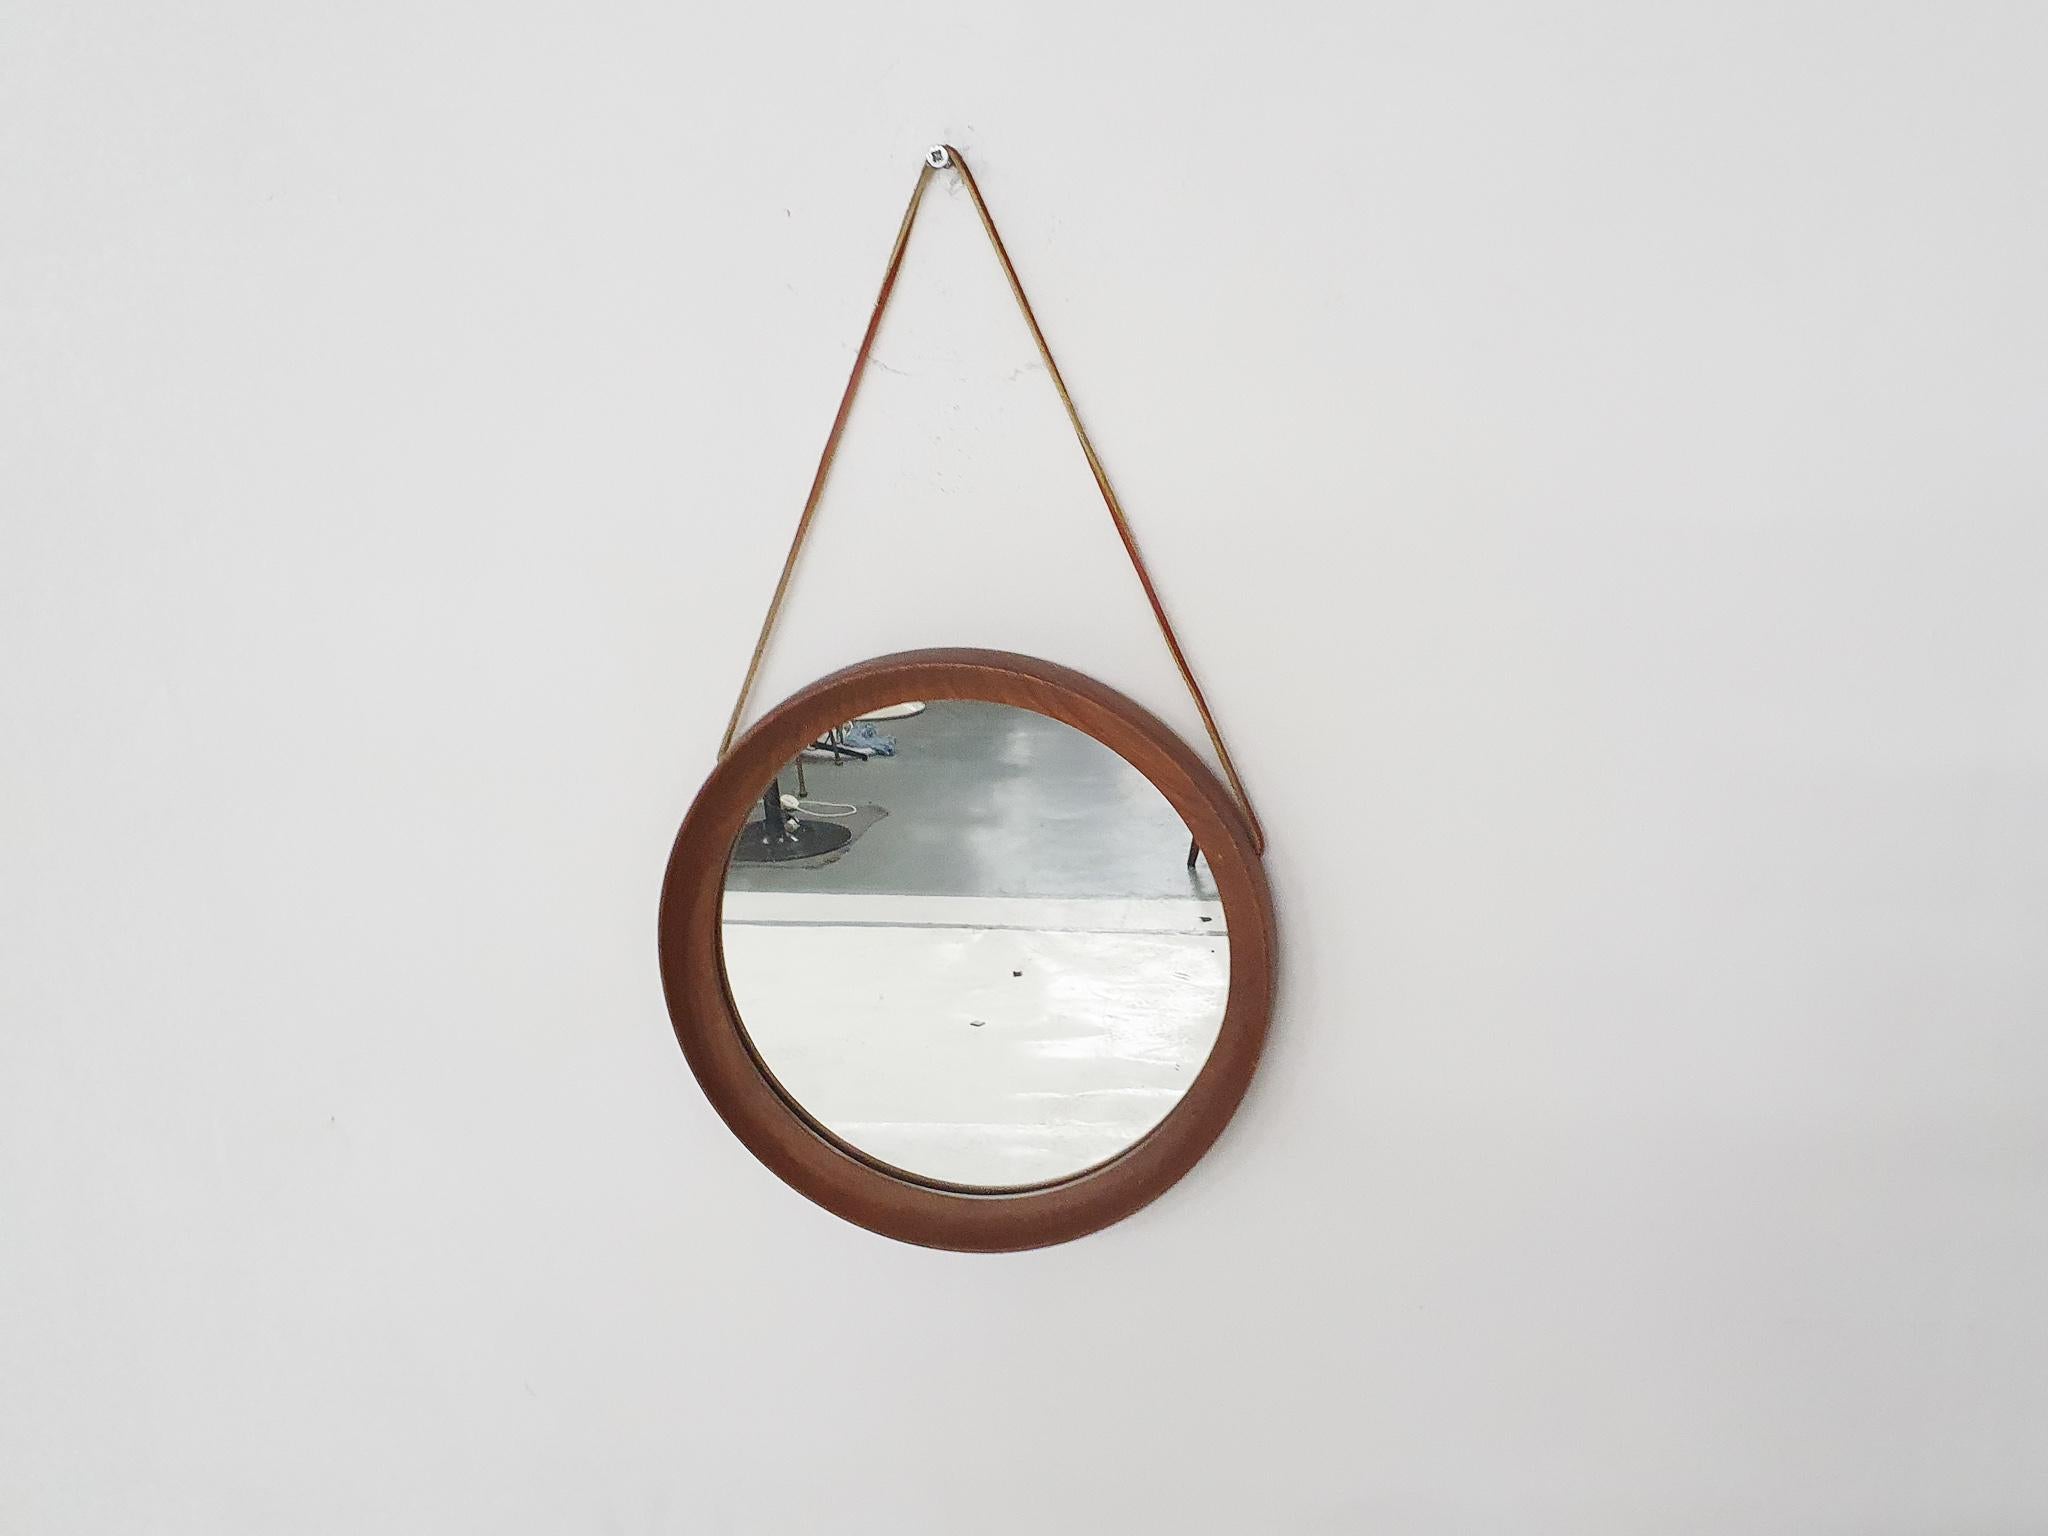 Scandinavian Modern Mid-Century Round Teak Mirror with Leather Strap, Denmark 1960's